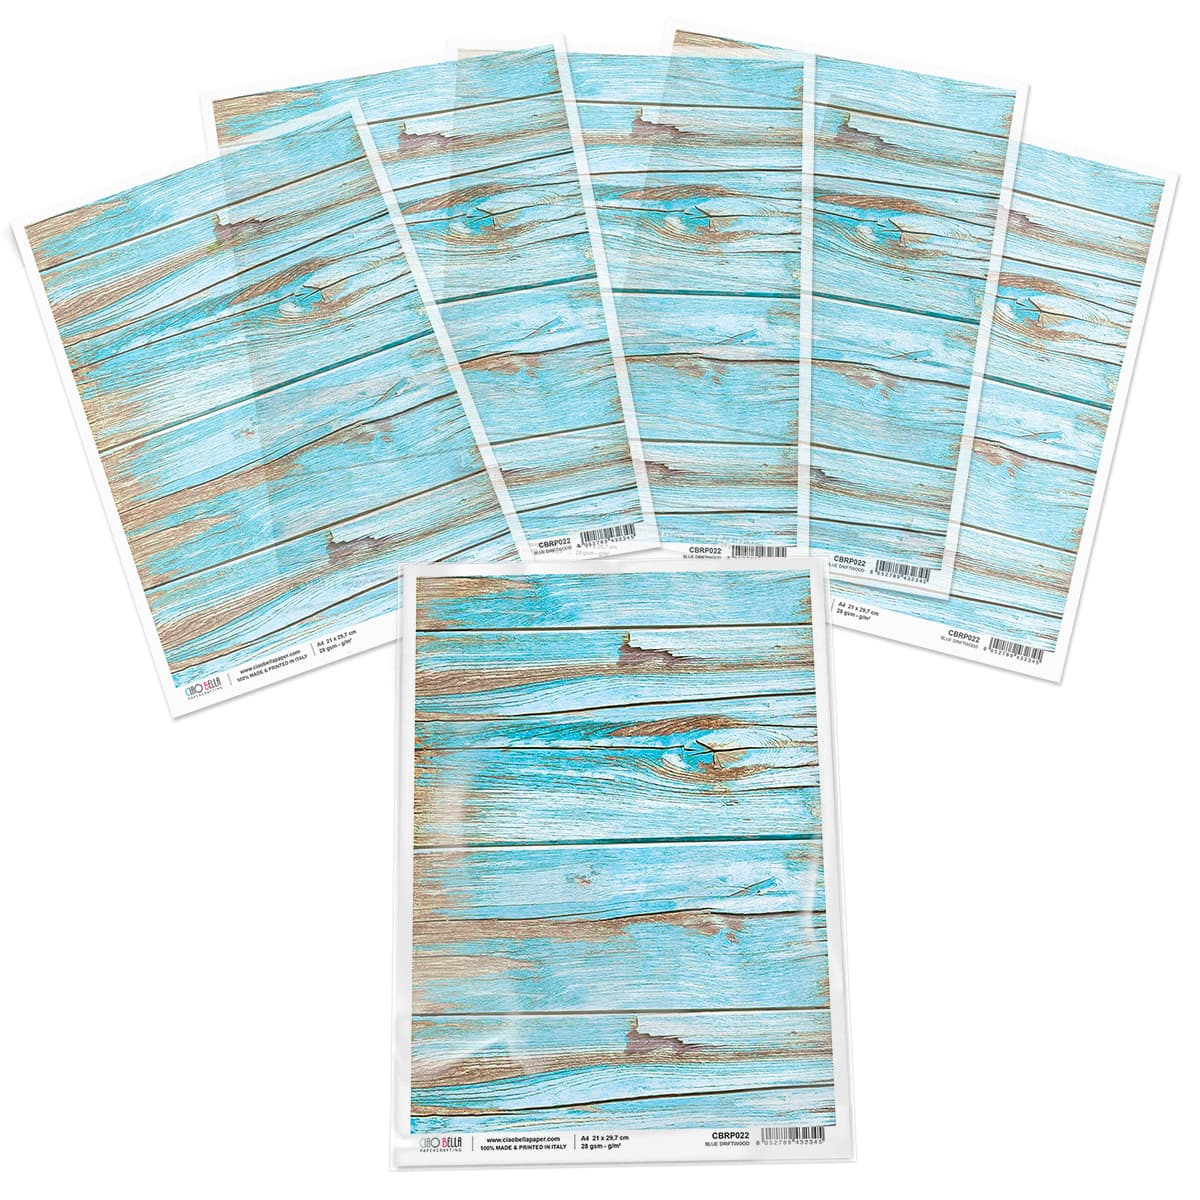 Хартия за декупаж Piuma A4 - Blue Driftwood - CBRP022